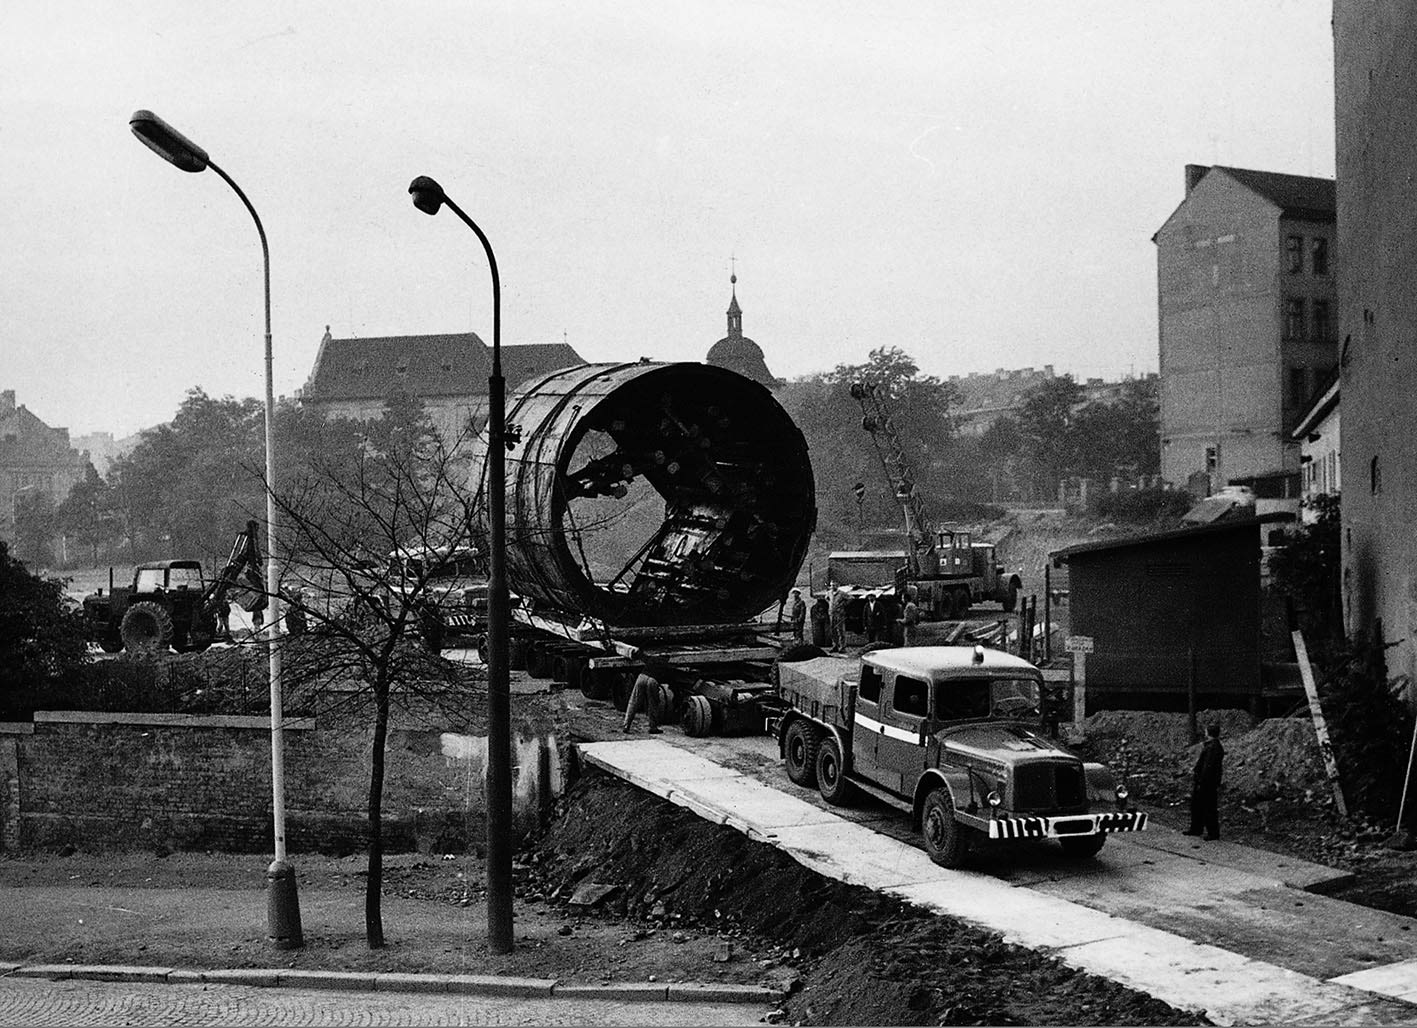 Převoz nemechanizovaného štítu ve Štětkově ulici na Pankráci po proražení prvního úseku metra (říjen 1969)